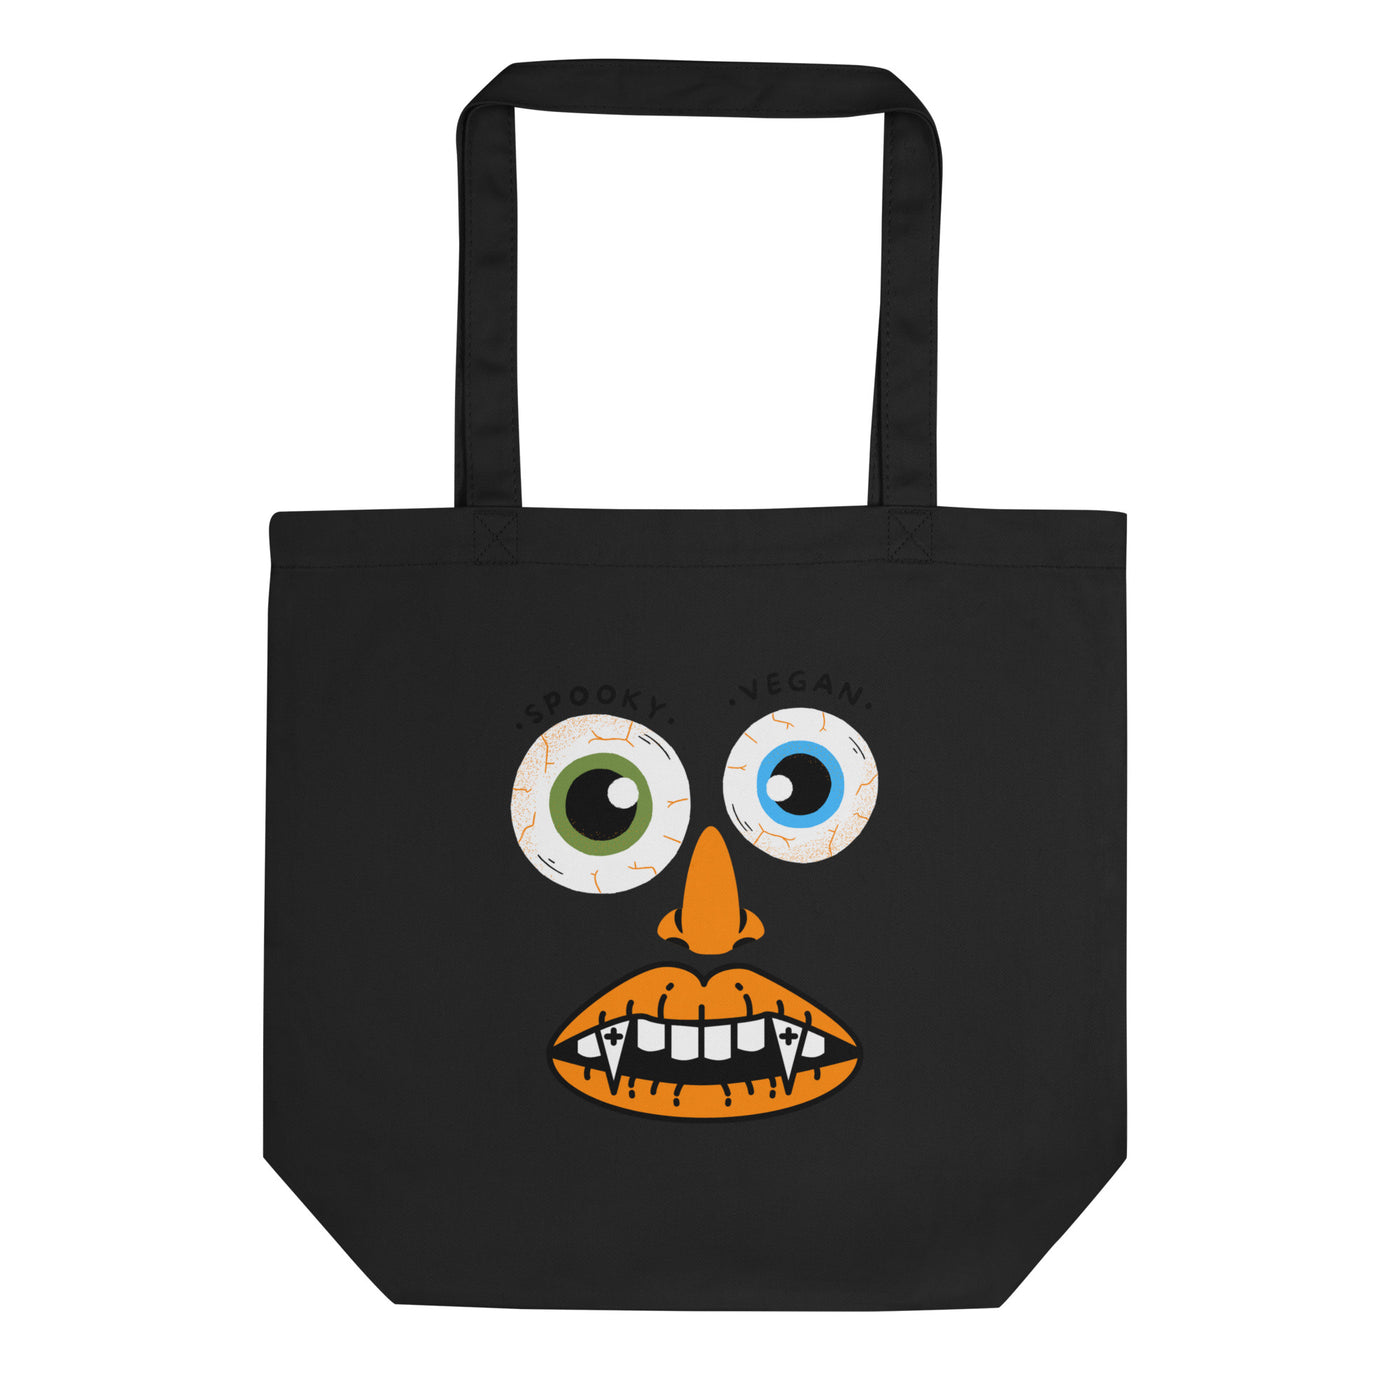 Tote Bag - Spooky Vegan Face!